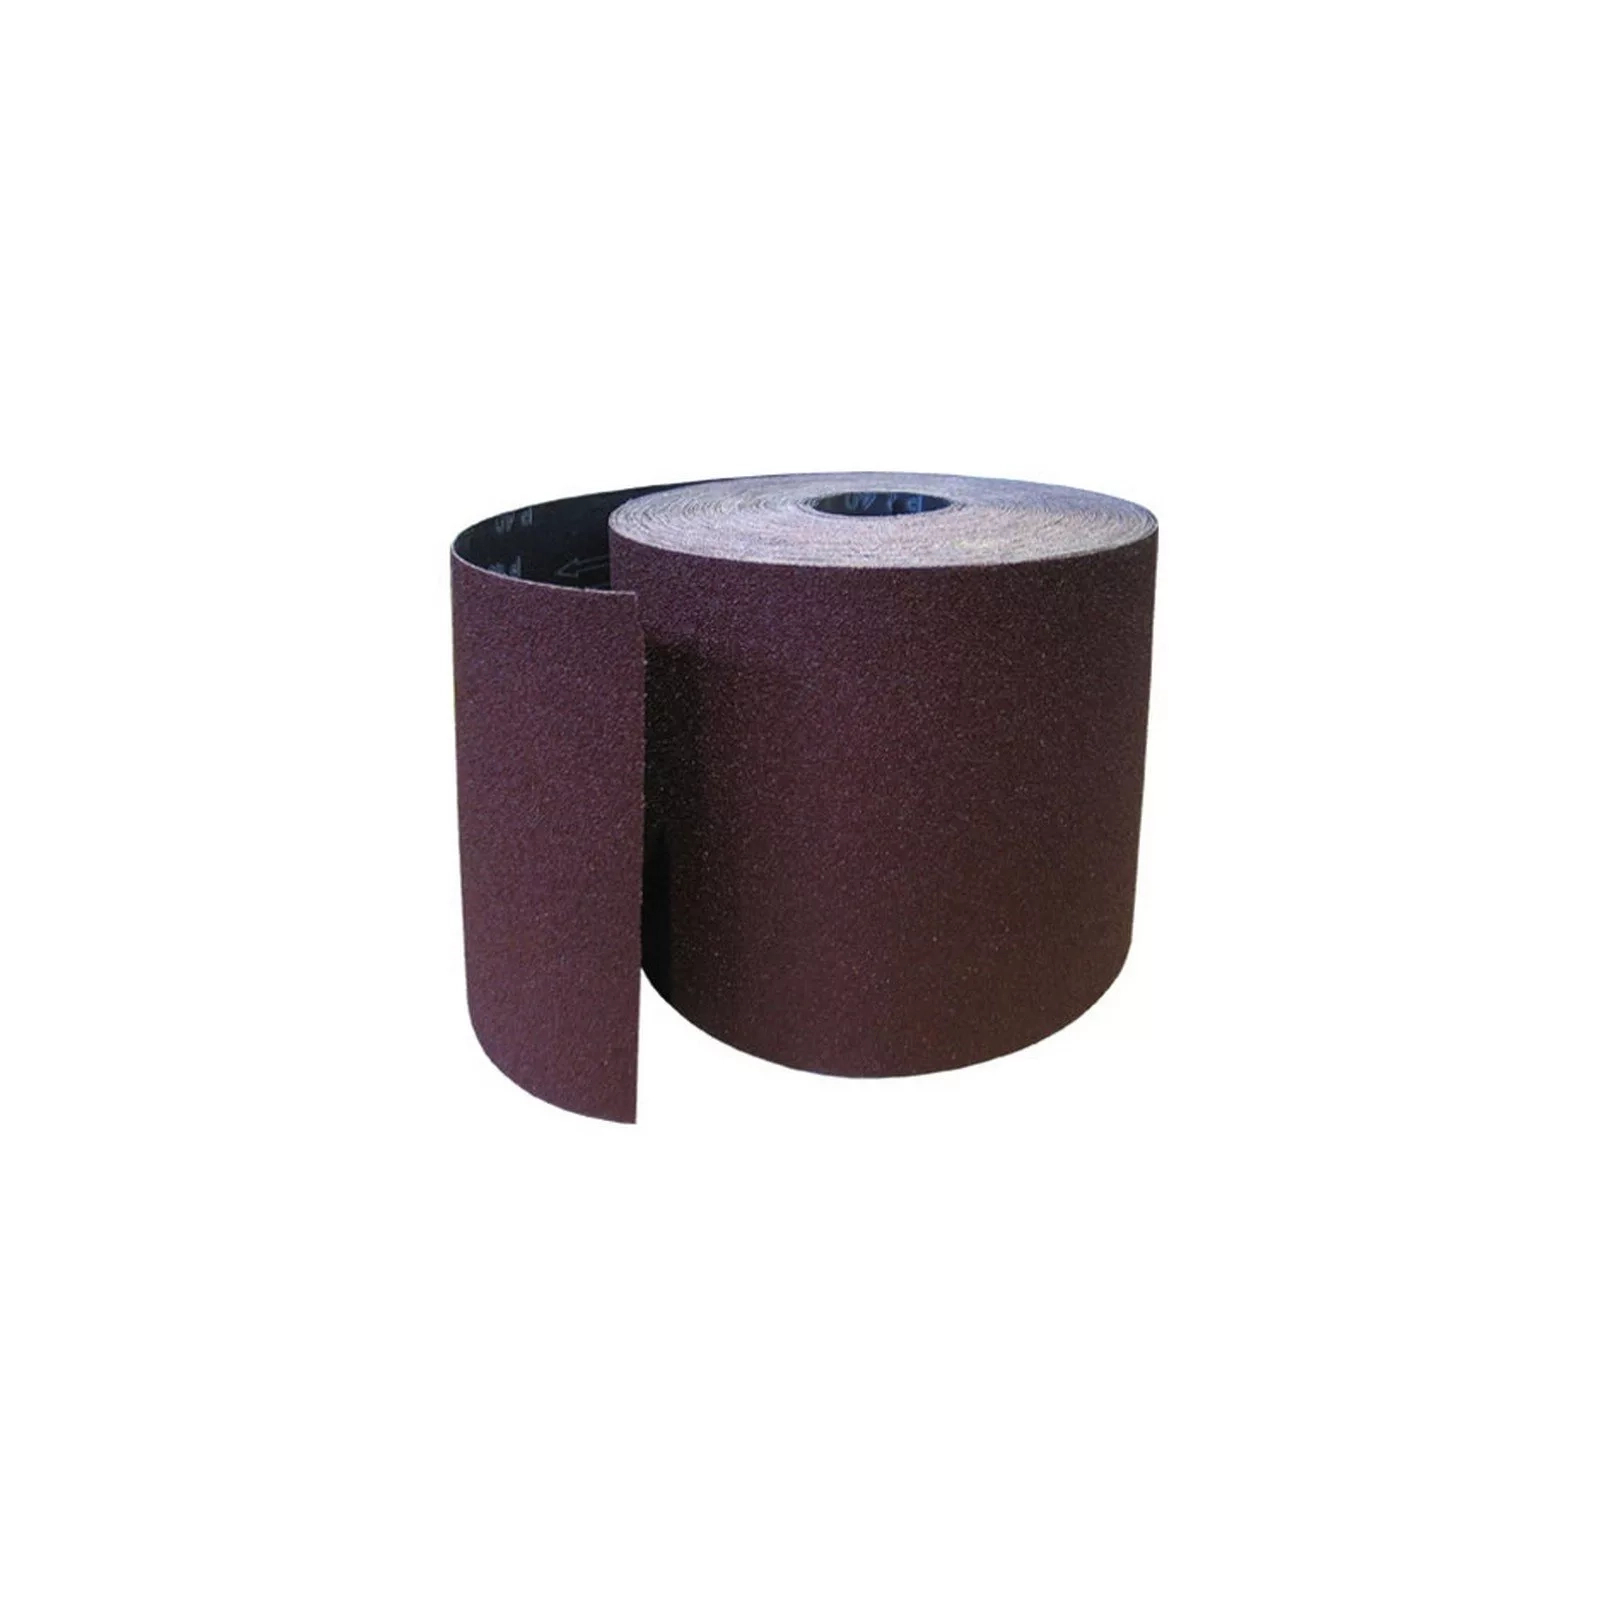 Наждачная бумага HAISSER бумажная основа – 115мм x 5м, зерно 80 (118543)